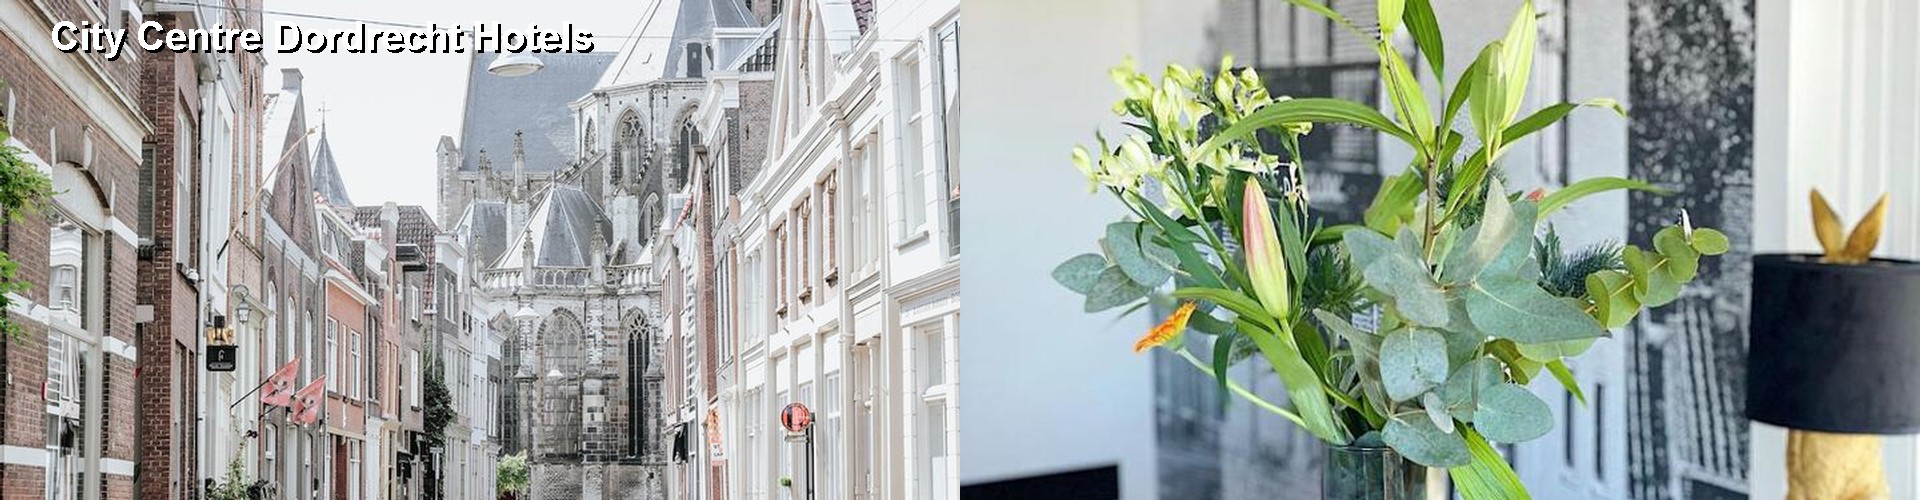 5 Best Hotels near City Centre Dordrecht